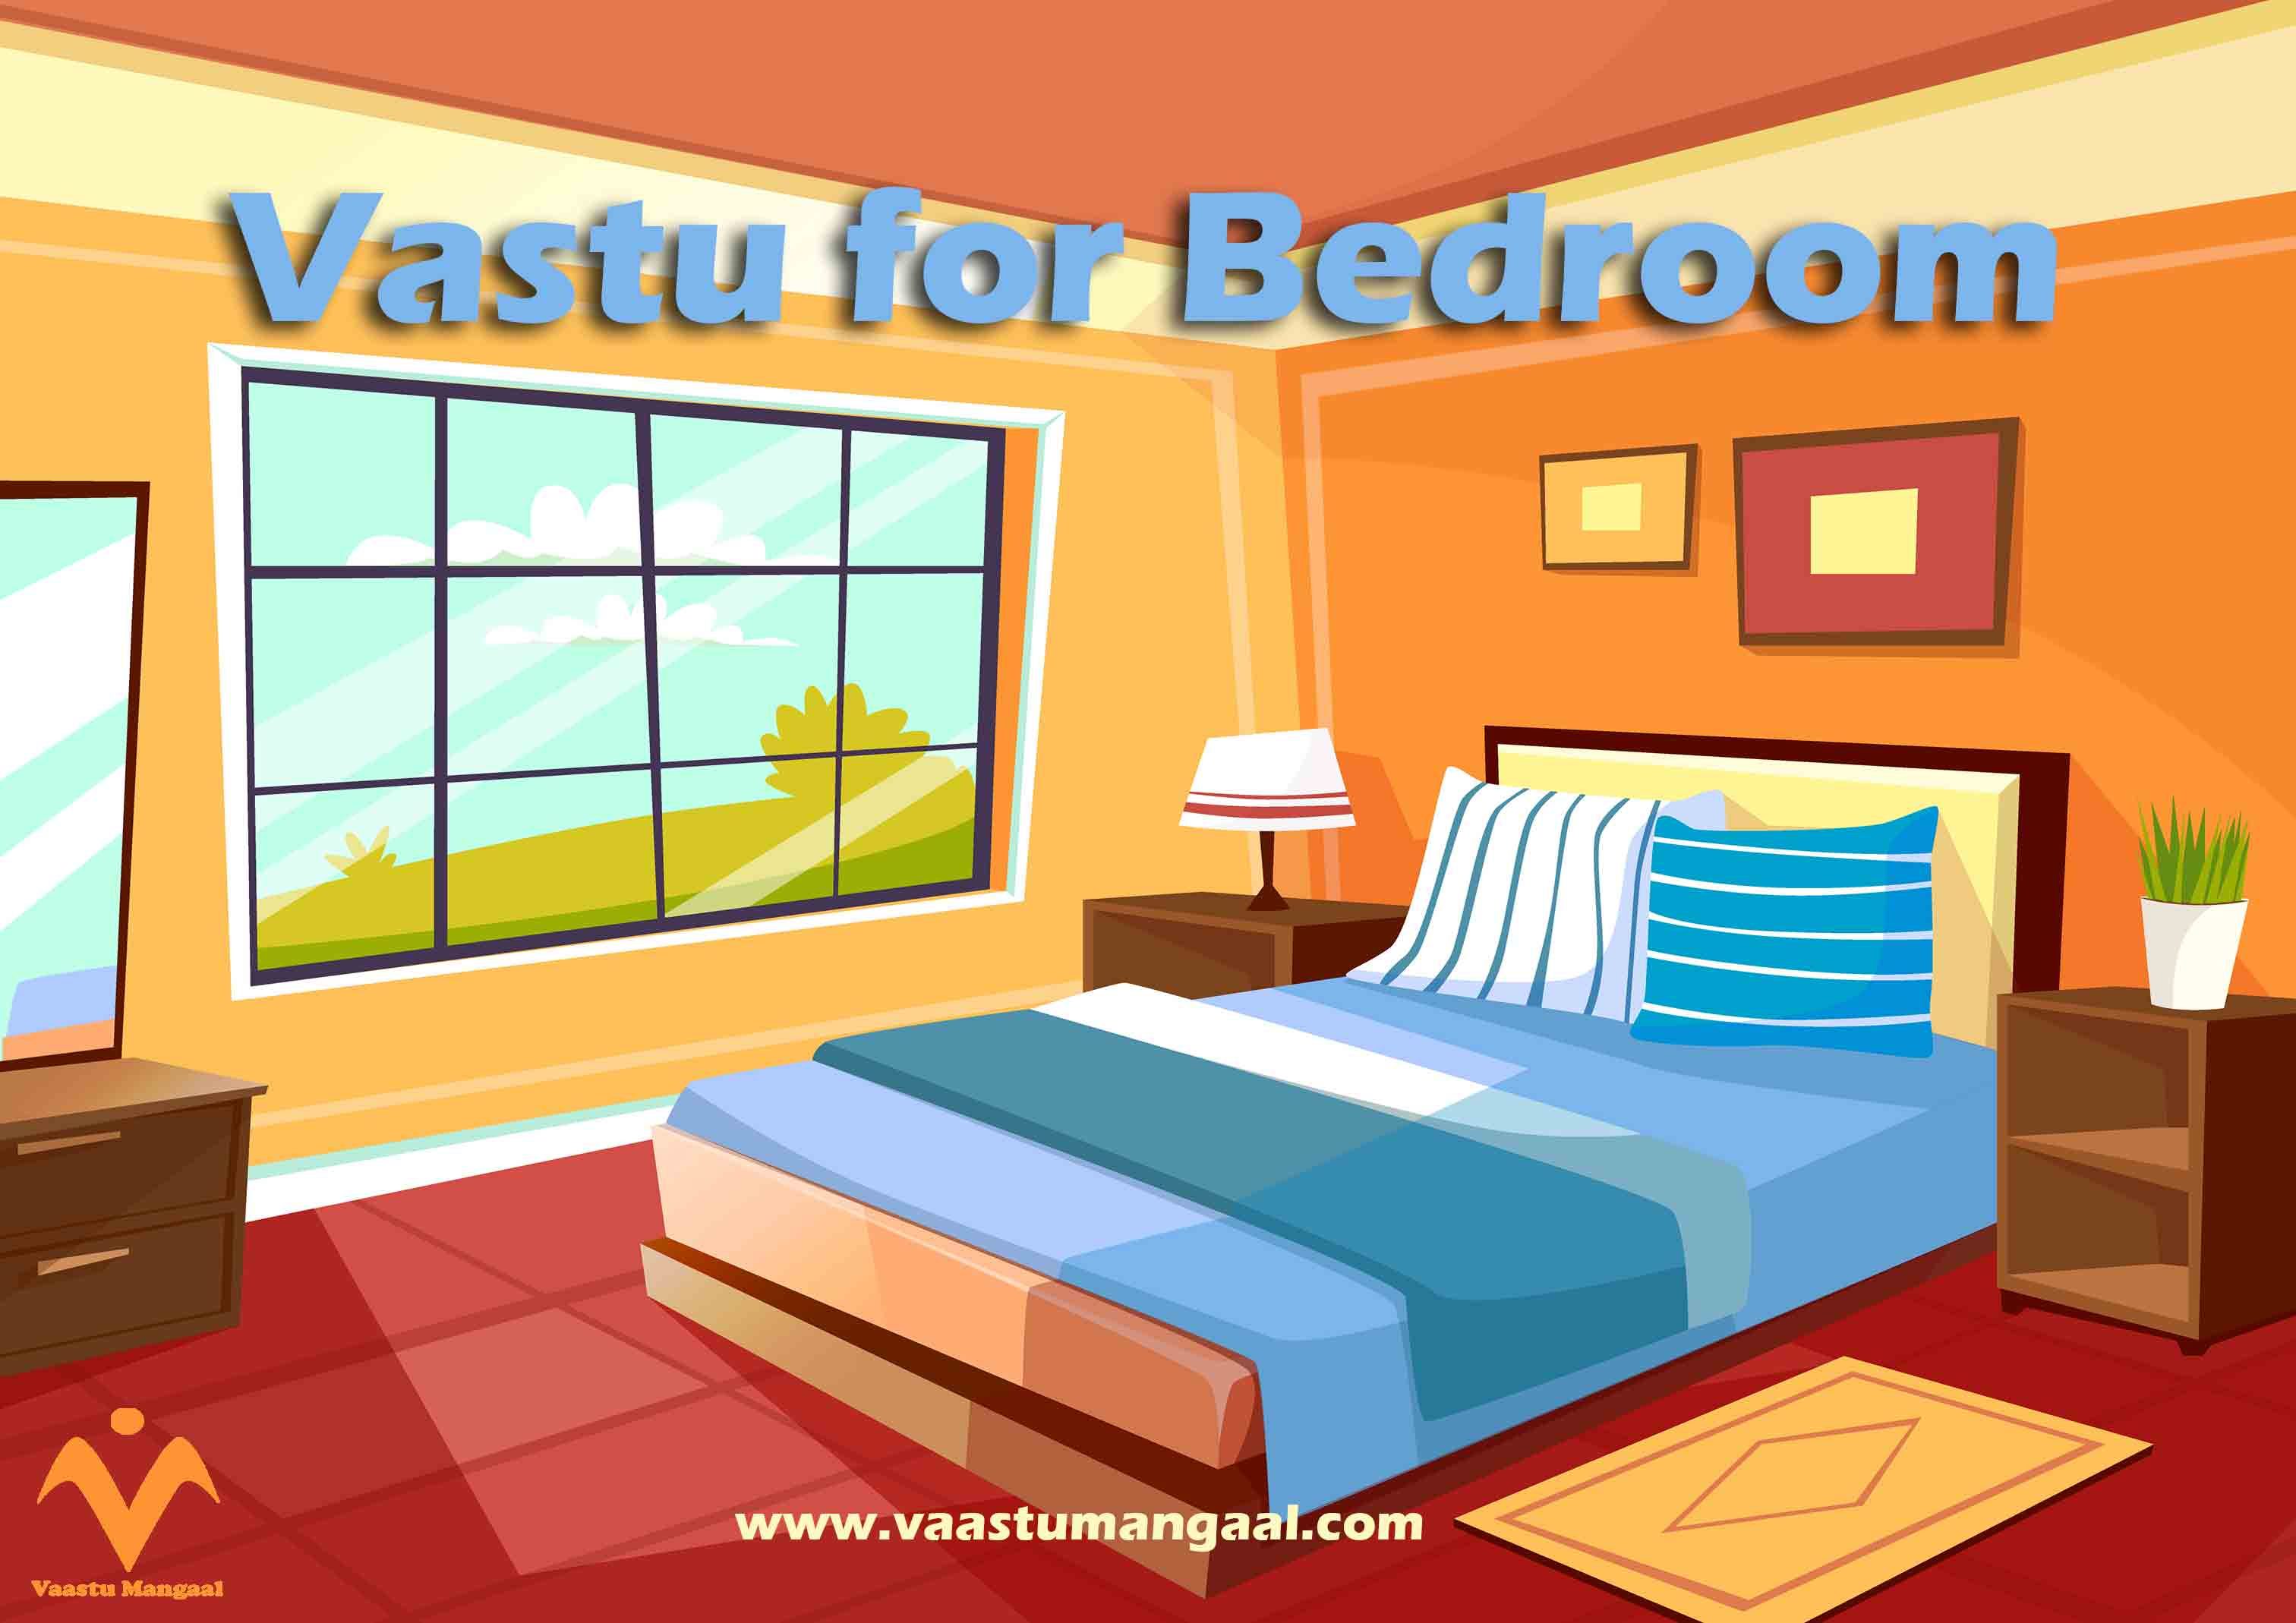 Vastu For Bedroom E1606742334611 